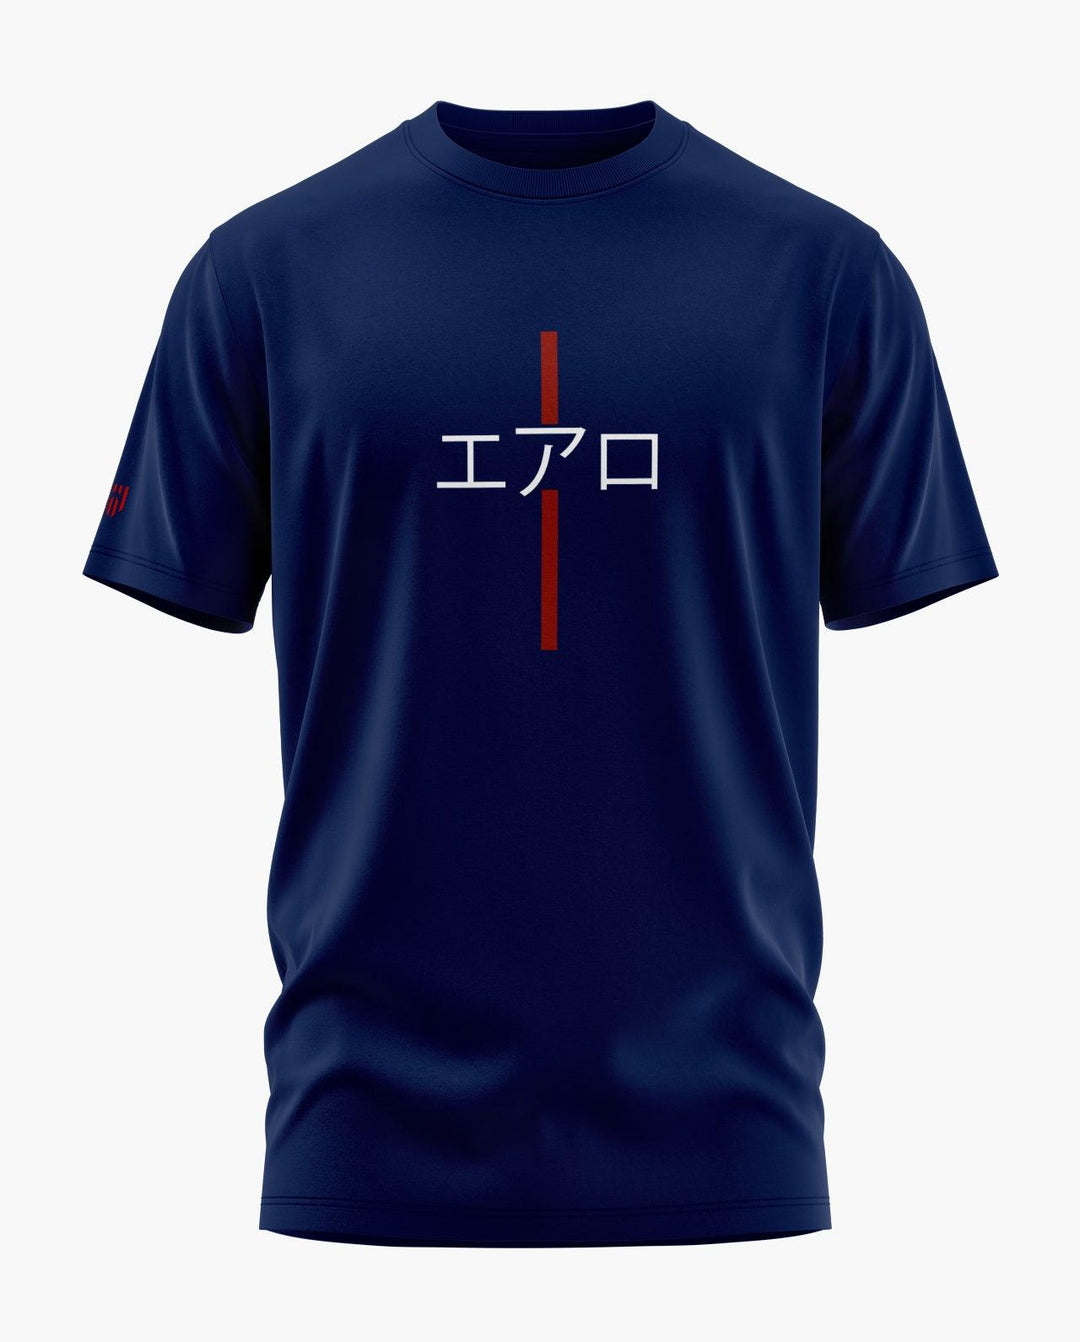 Aero Japan Minimal T-Shirt - Aero Armour